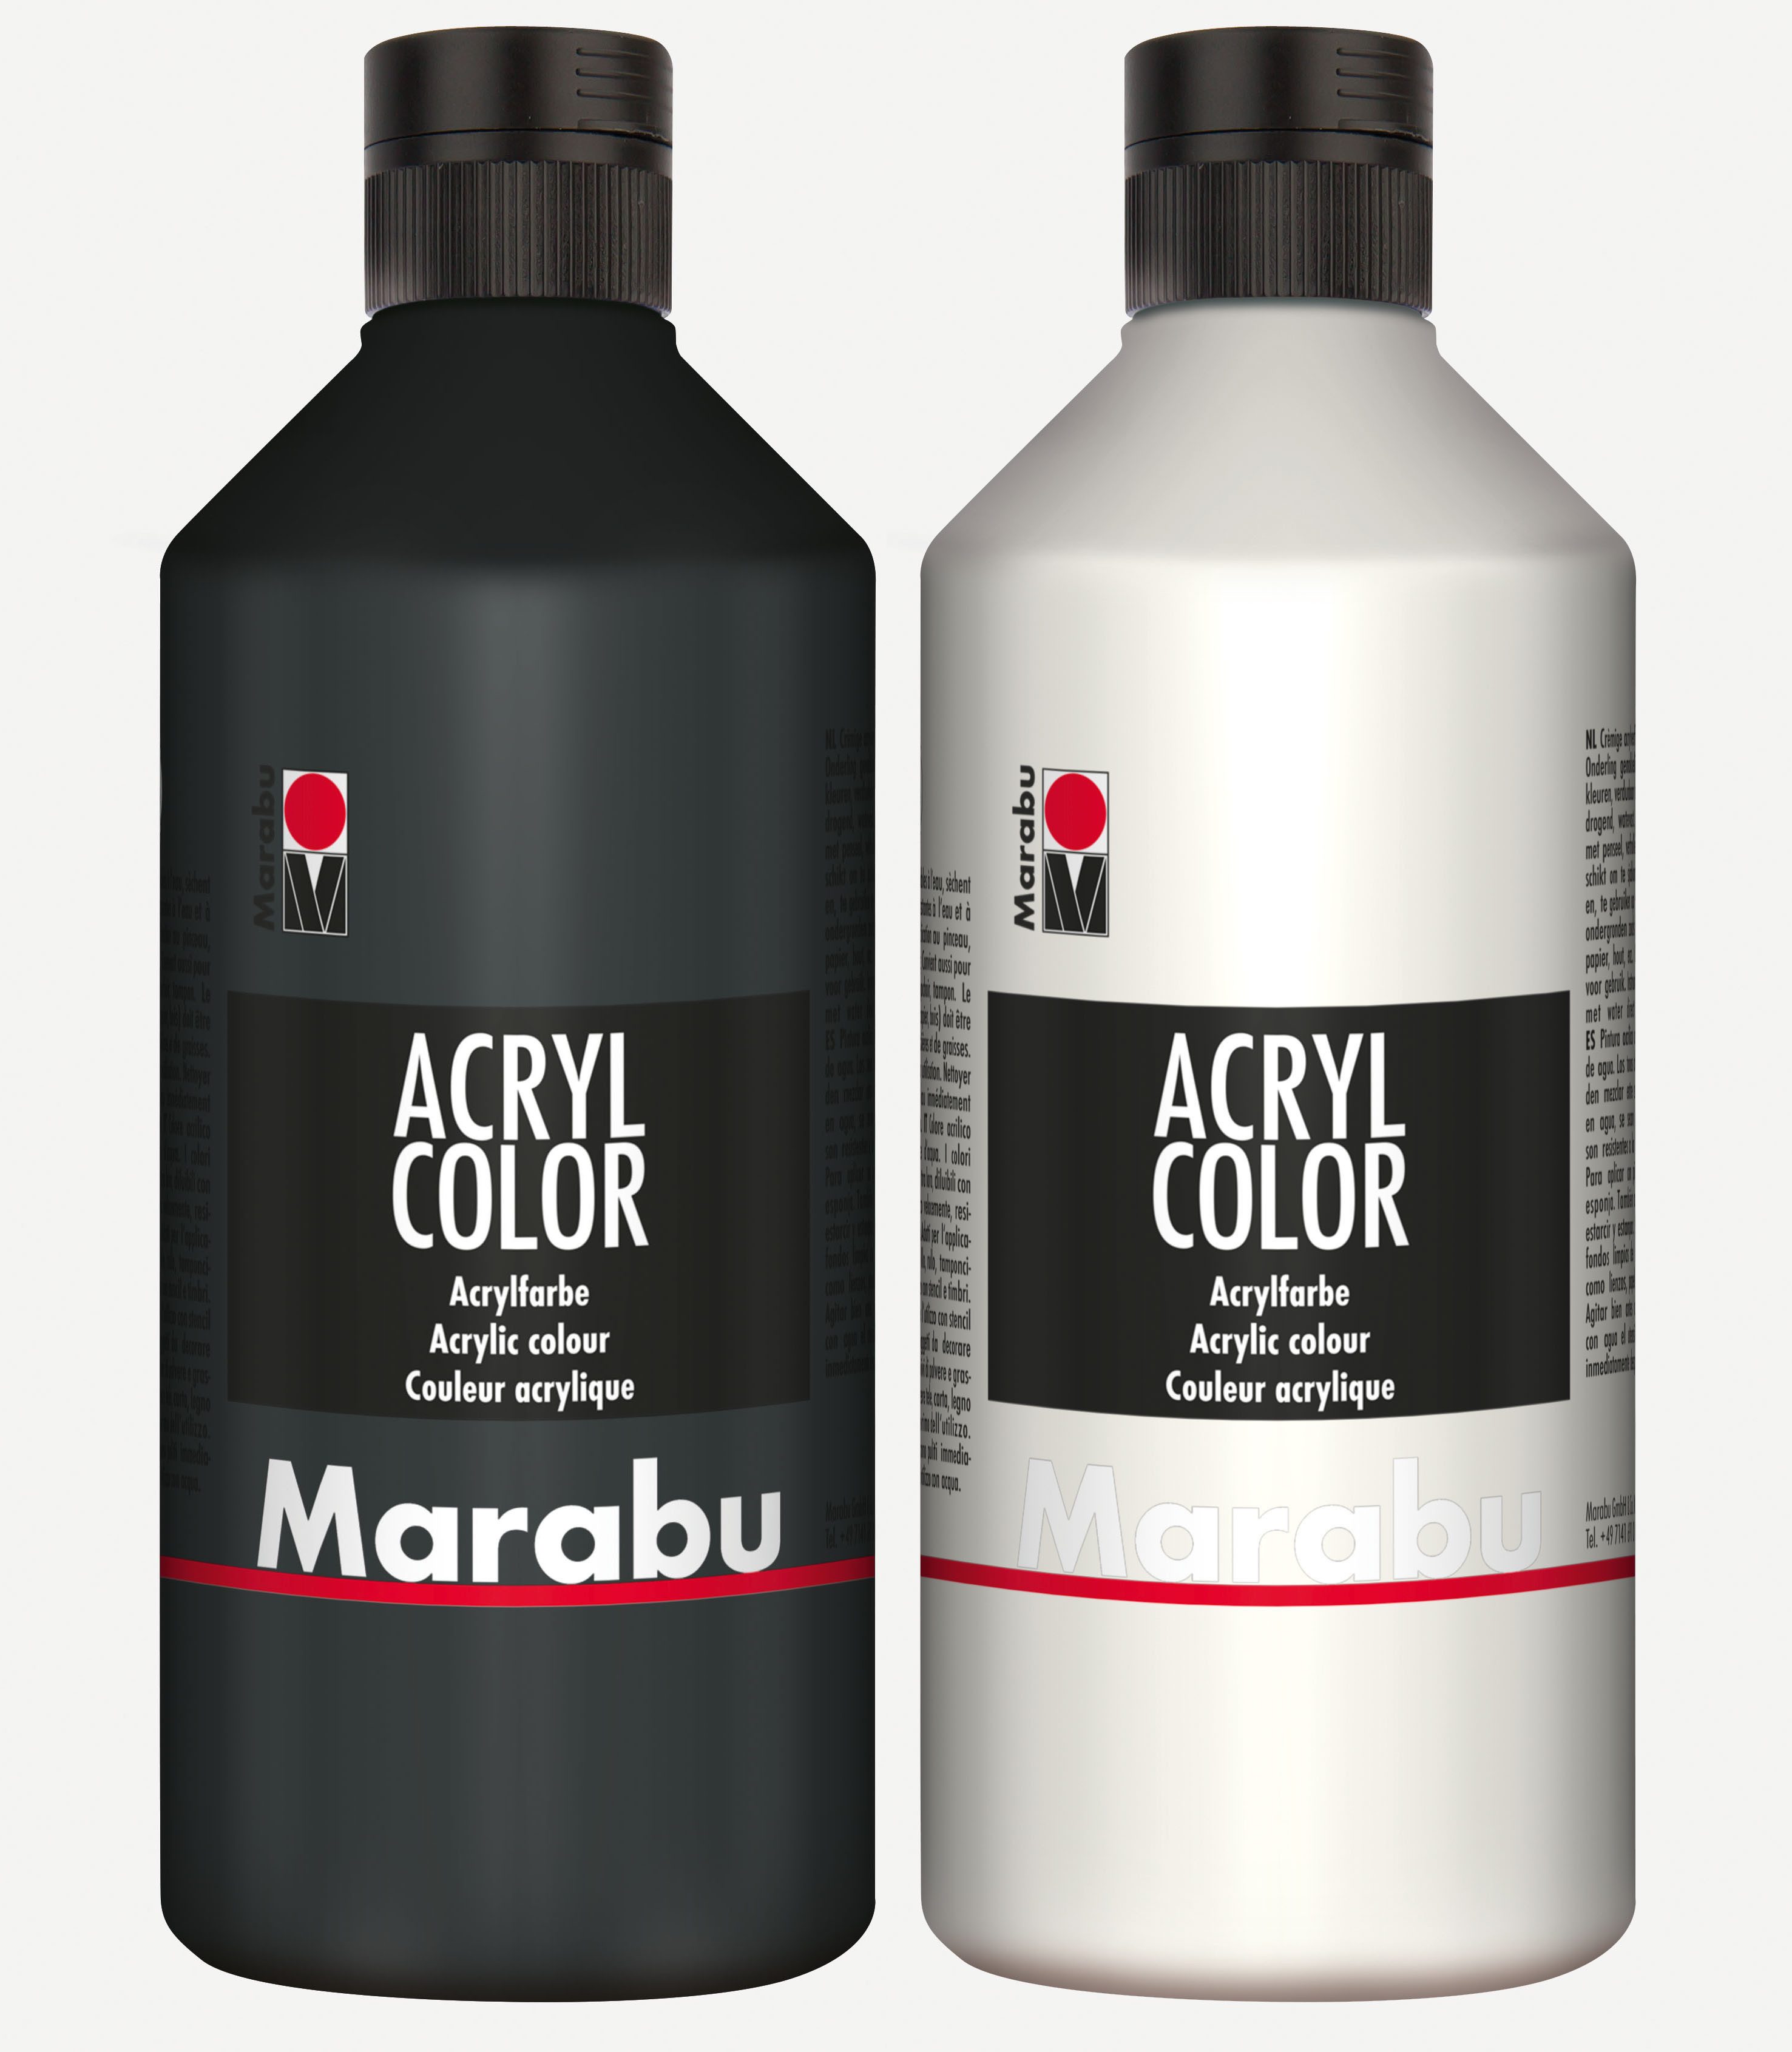 Marabu Acrylfarbe 2x Marabu Acrylfarbe Acryl Color je 500ml Flasche, 1x weiß 070 und 1x